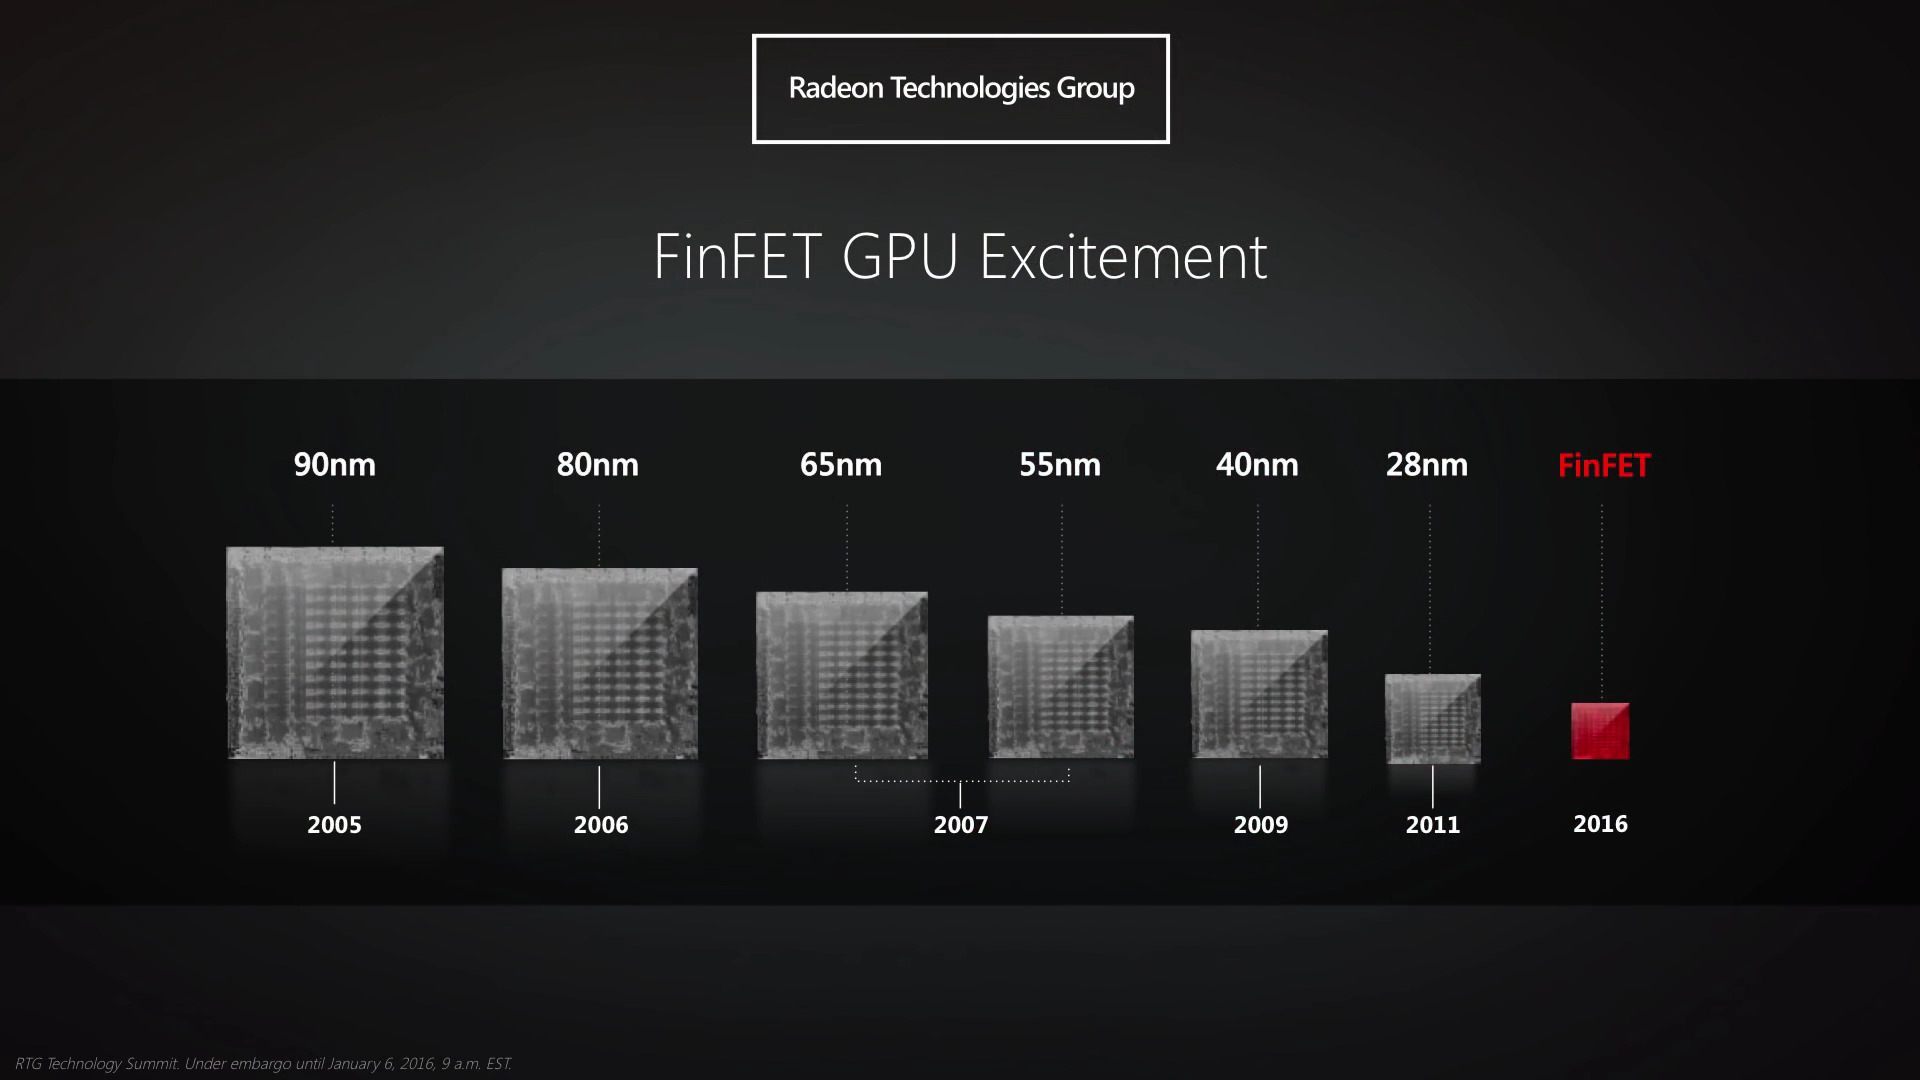 Nowe Radeony powstaną w oparciu o proces technologiczny 14 nm FinFET. - Nowe Radeony ukażą się w połowie tego roku - wiadomość - 2016-01-05